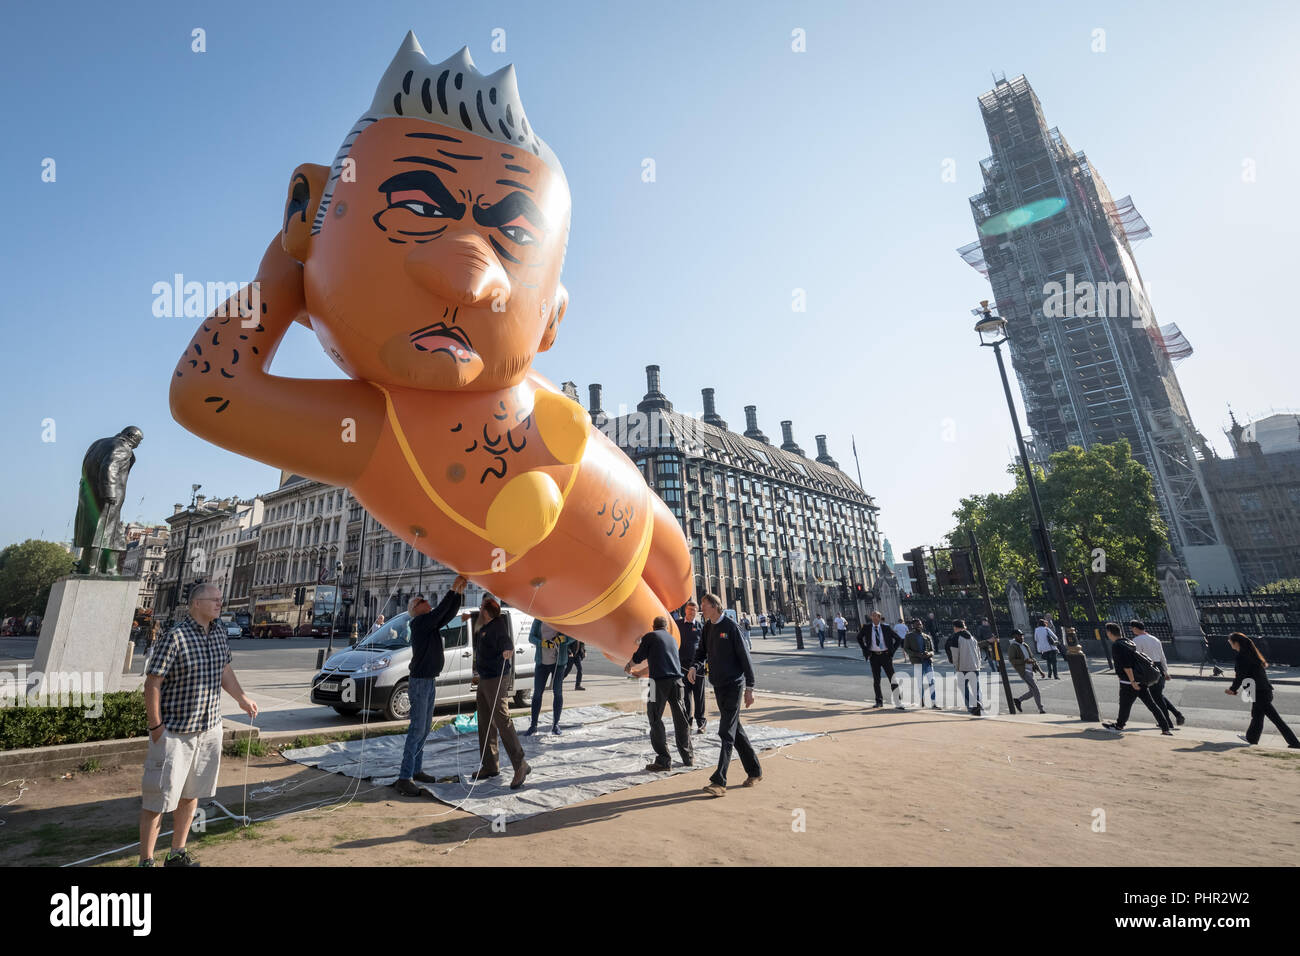 Riesige Luftschiff der Londoner Bürgermeister Sadiq Khan trägt einen gelben Bikini wird aufgeblasen, bereit, über Parliament Square in London zu fliegen. Stockfoto